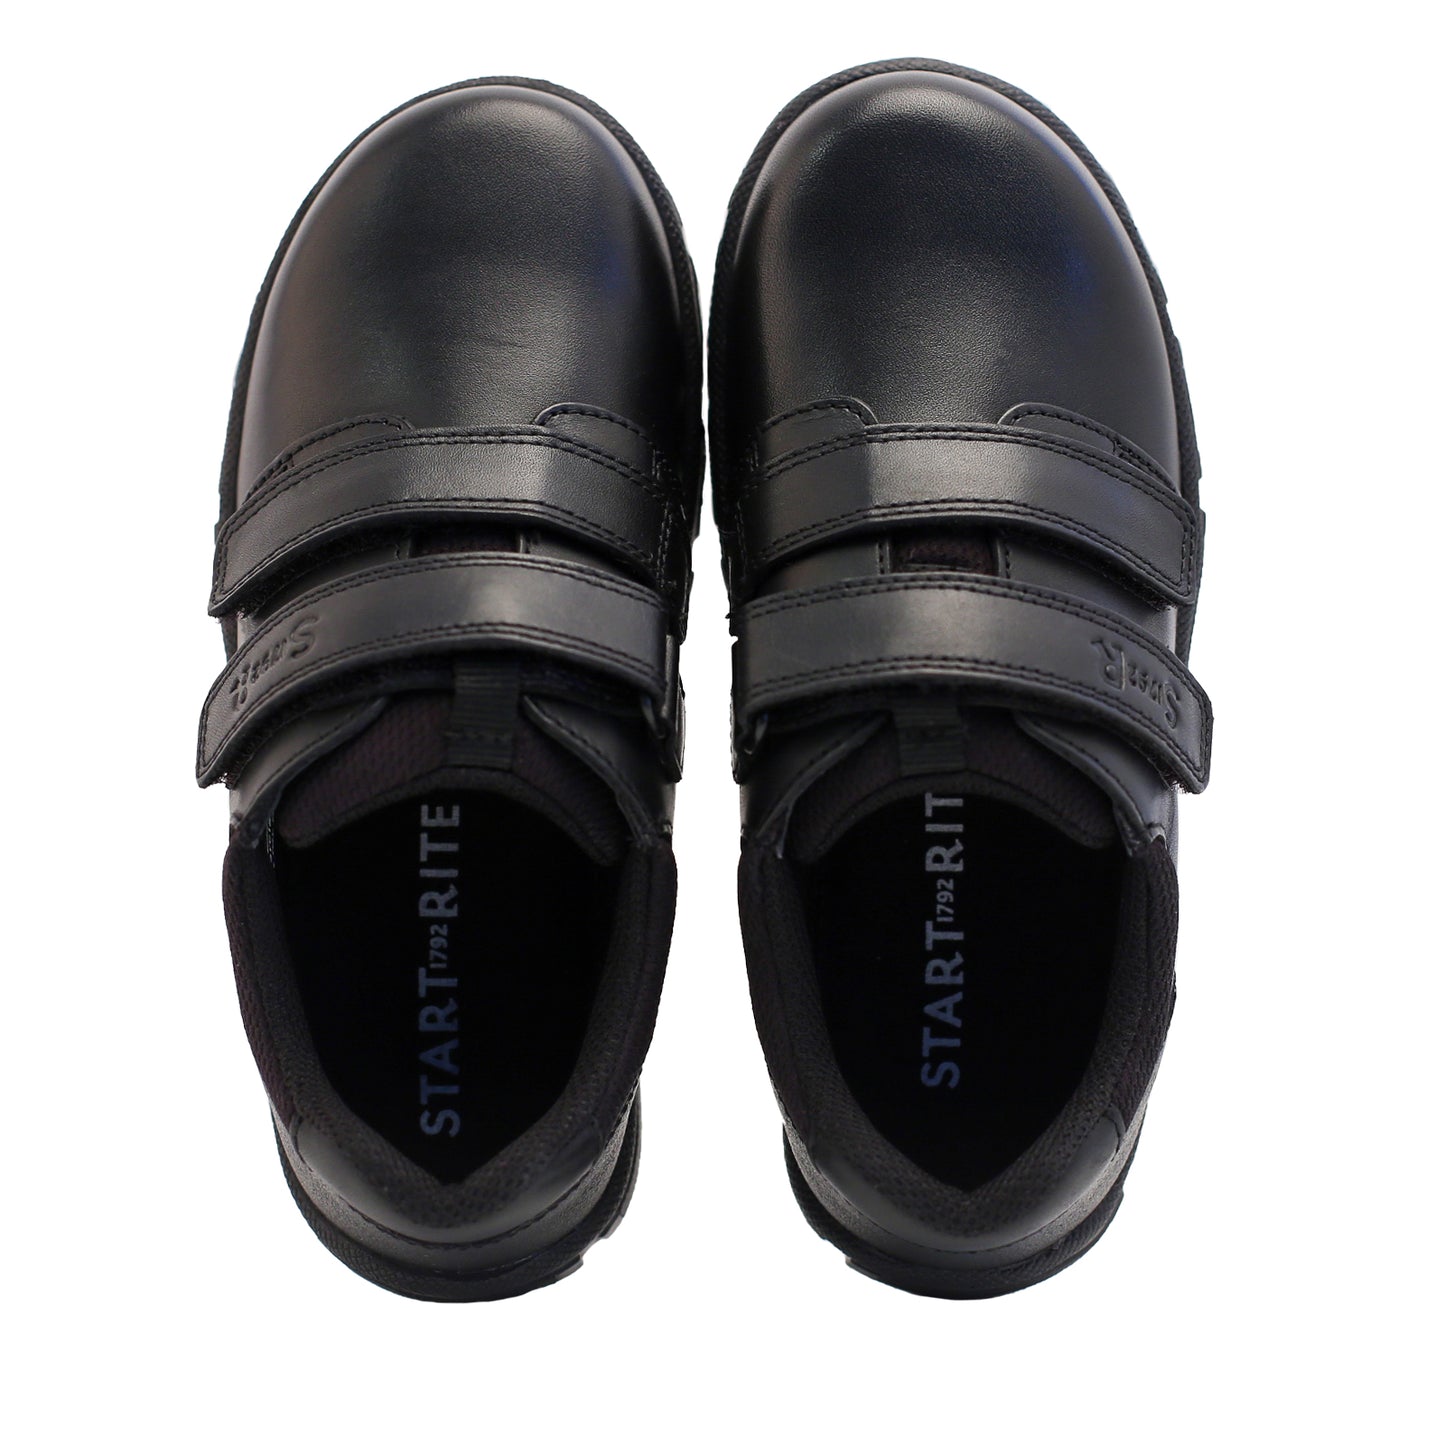 Origin Black Leather Boy's School Shoe